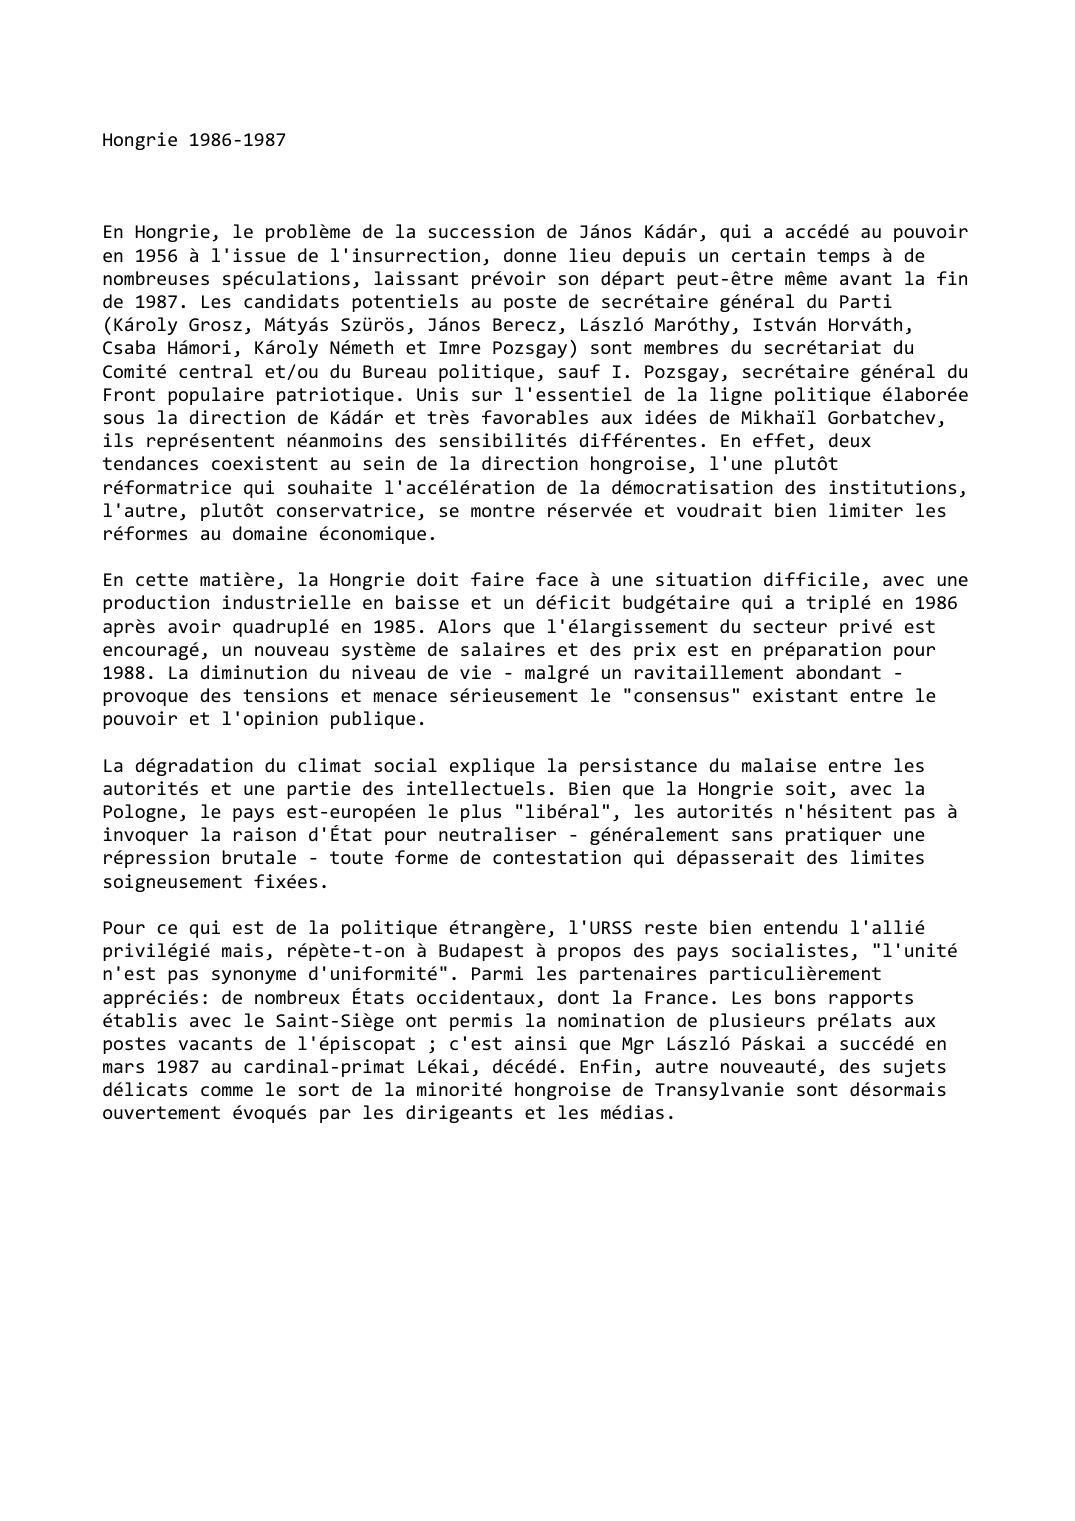 Prévisualisation du document Hongrie (1986-1987)